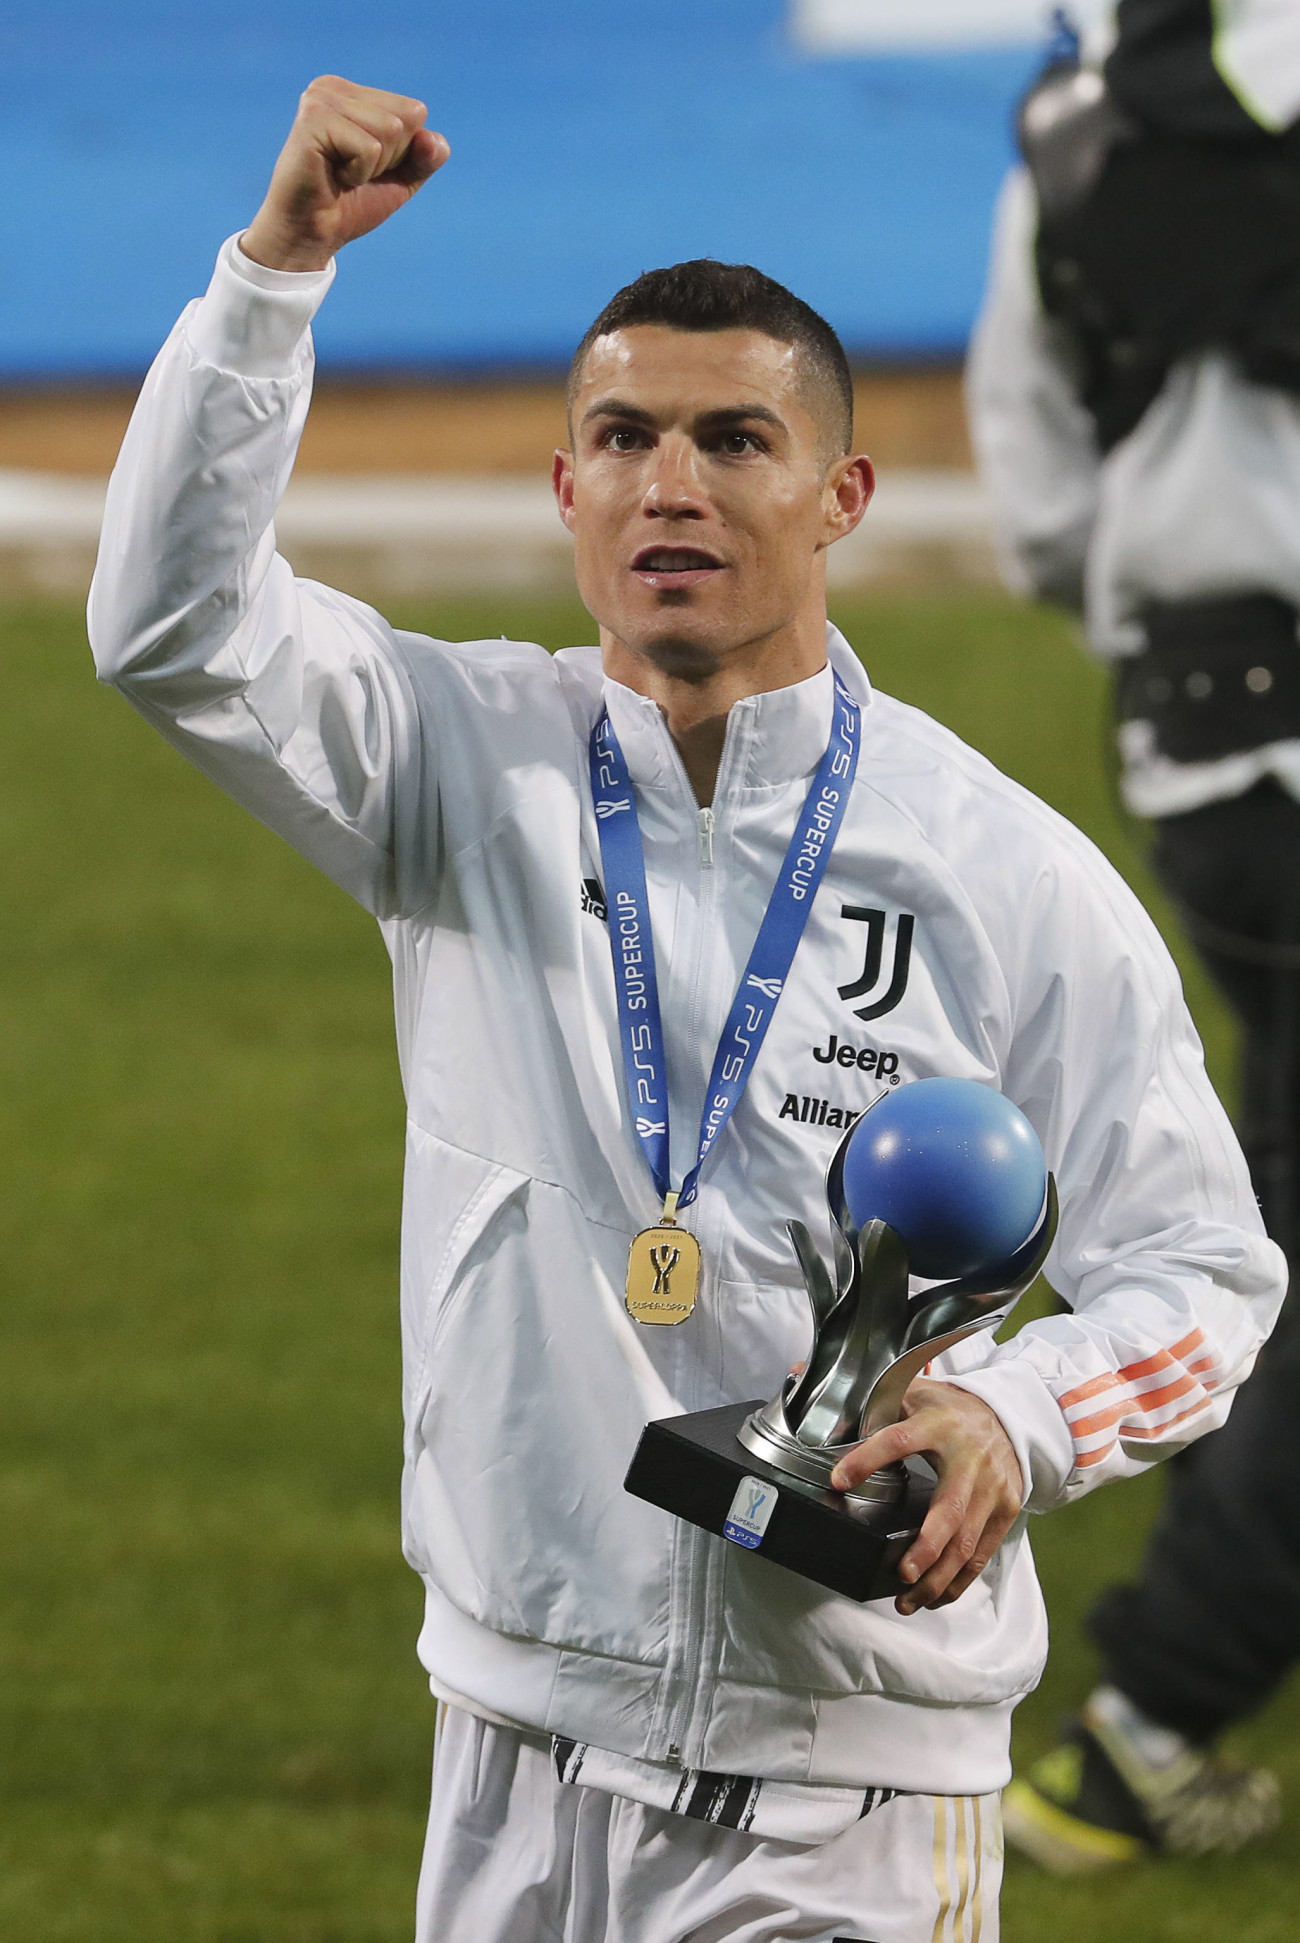 Reggio Emilia, 2021. január 21.
Cristiano Ronaldo, a Juventus játékosa ünnepel a trófeával, miután 2-0-ra győztek a Napoli ellen az olasz labdarúgó Szuperkupáért játszott mérkőzésen Reggio Emiliában 2021. január 20-án.
MTI/EPA/ANSA/Elisabetta Baracchi